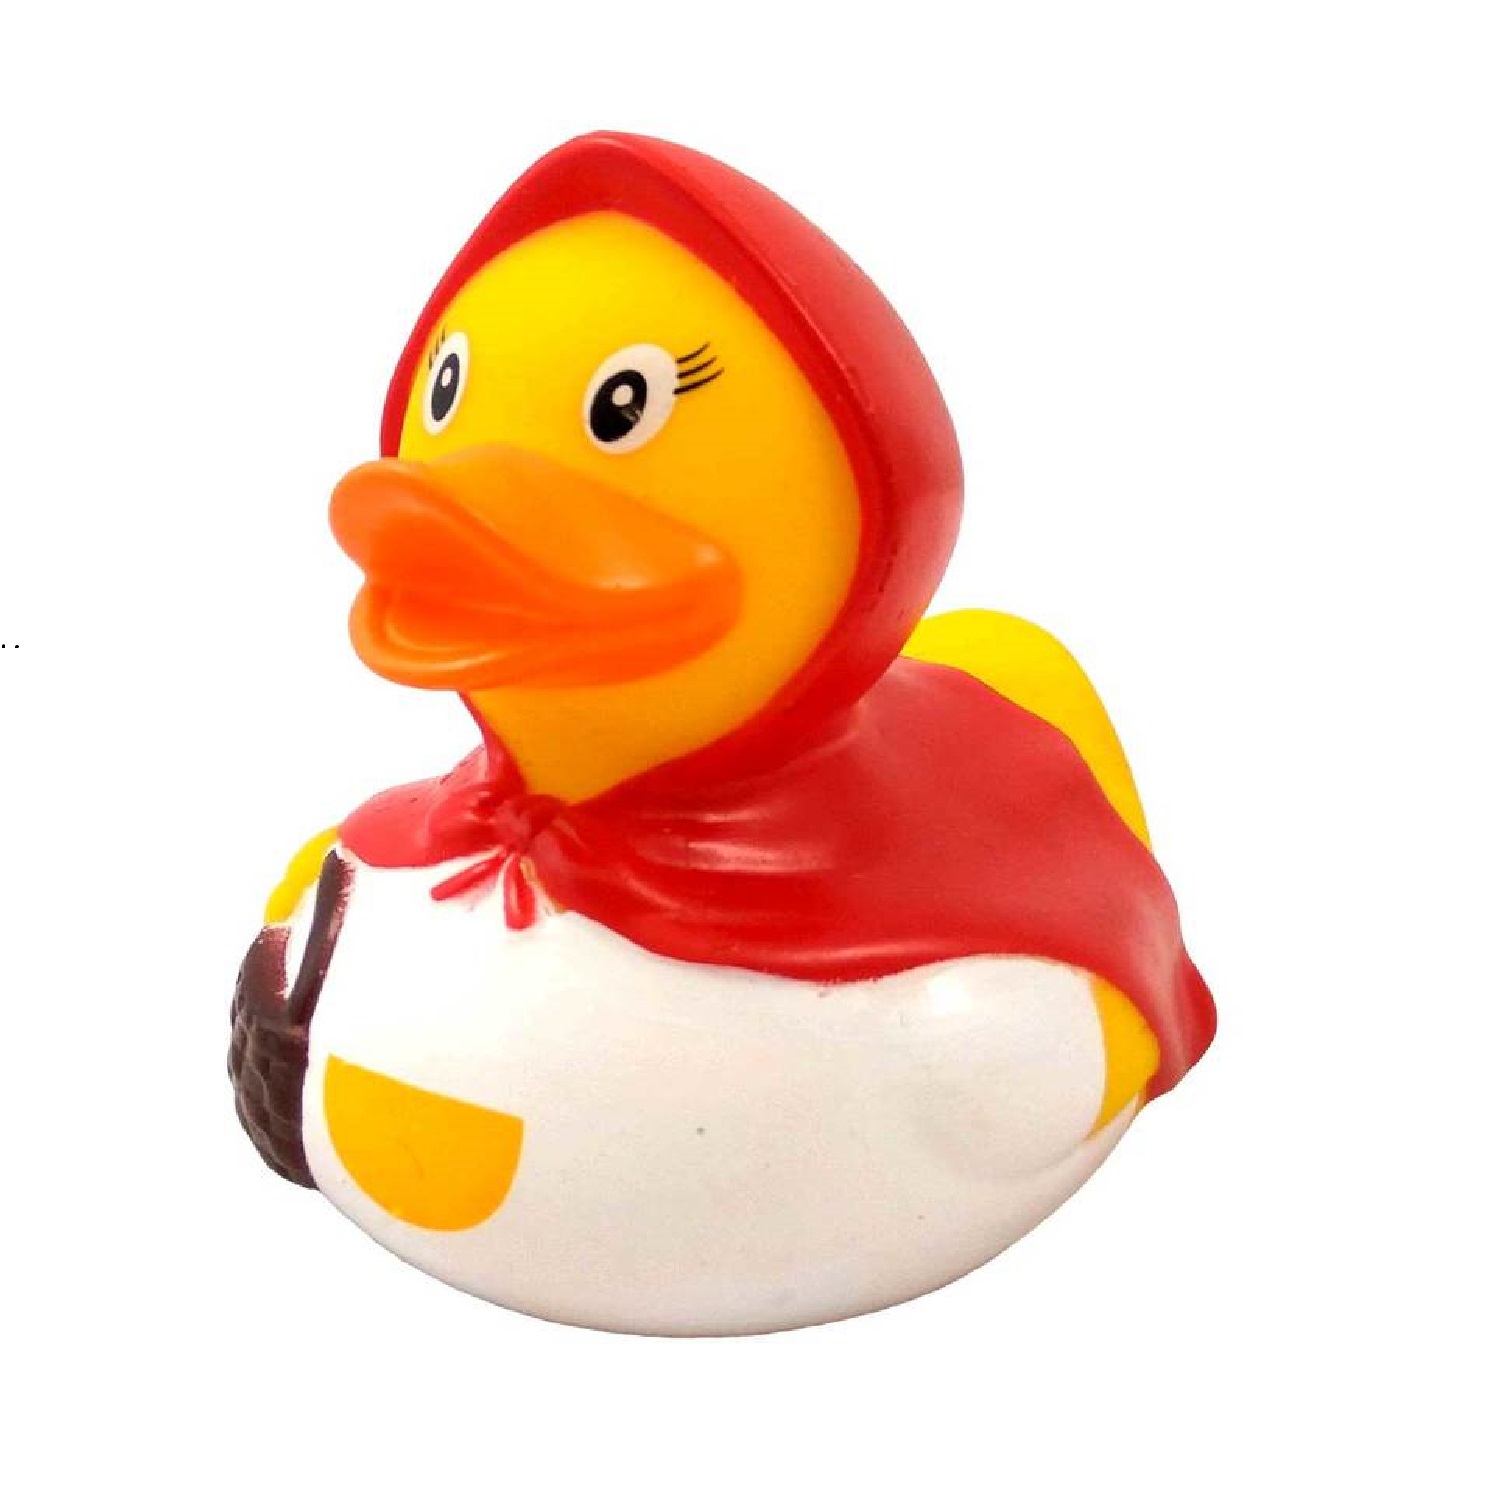 Игрушка Funny ducks для ванной Красная шапочка уточка 1858 - фото 1